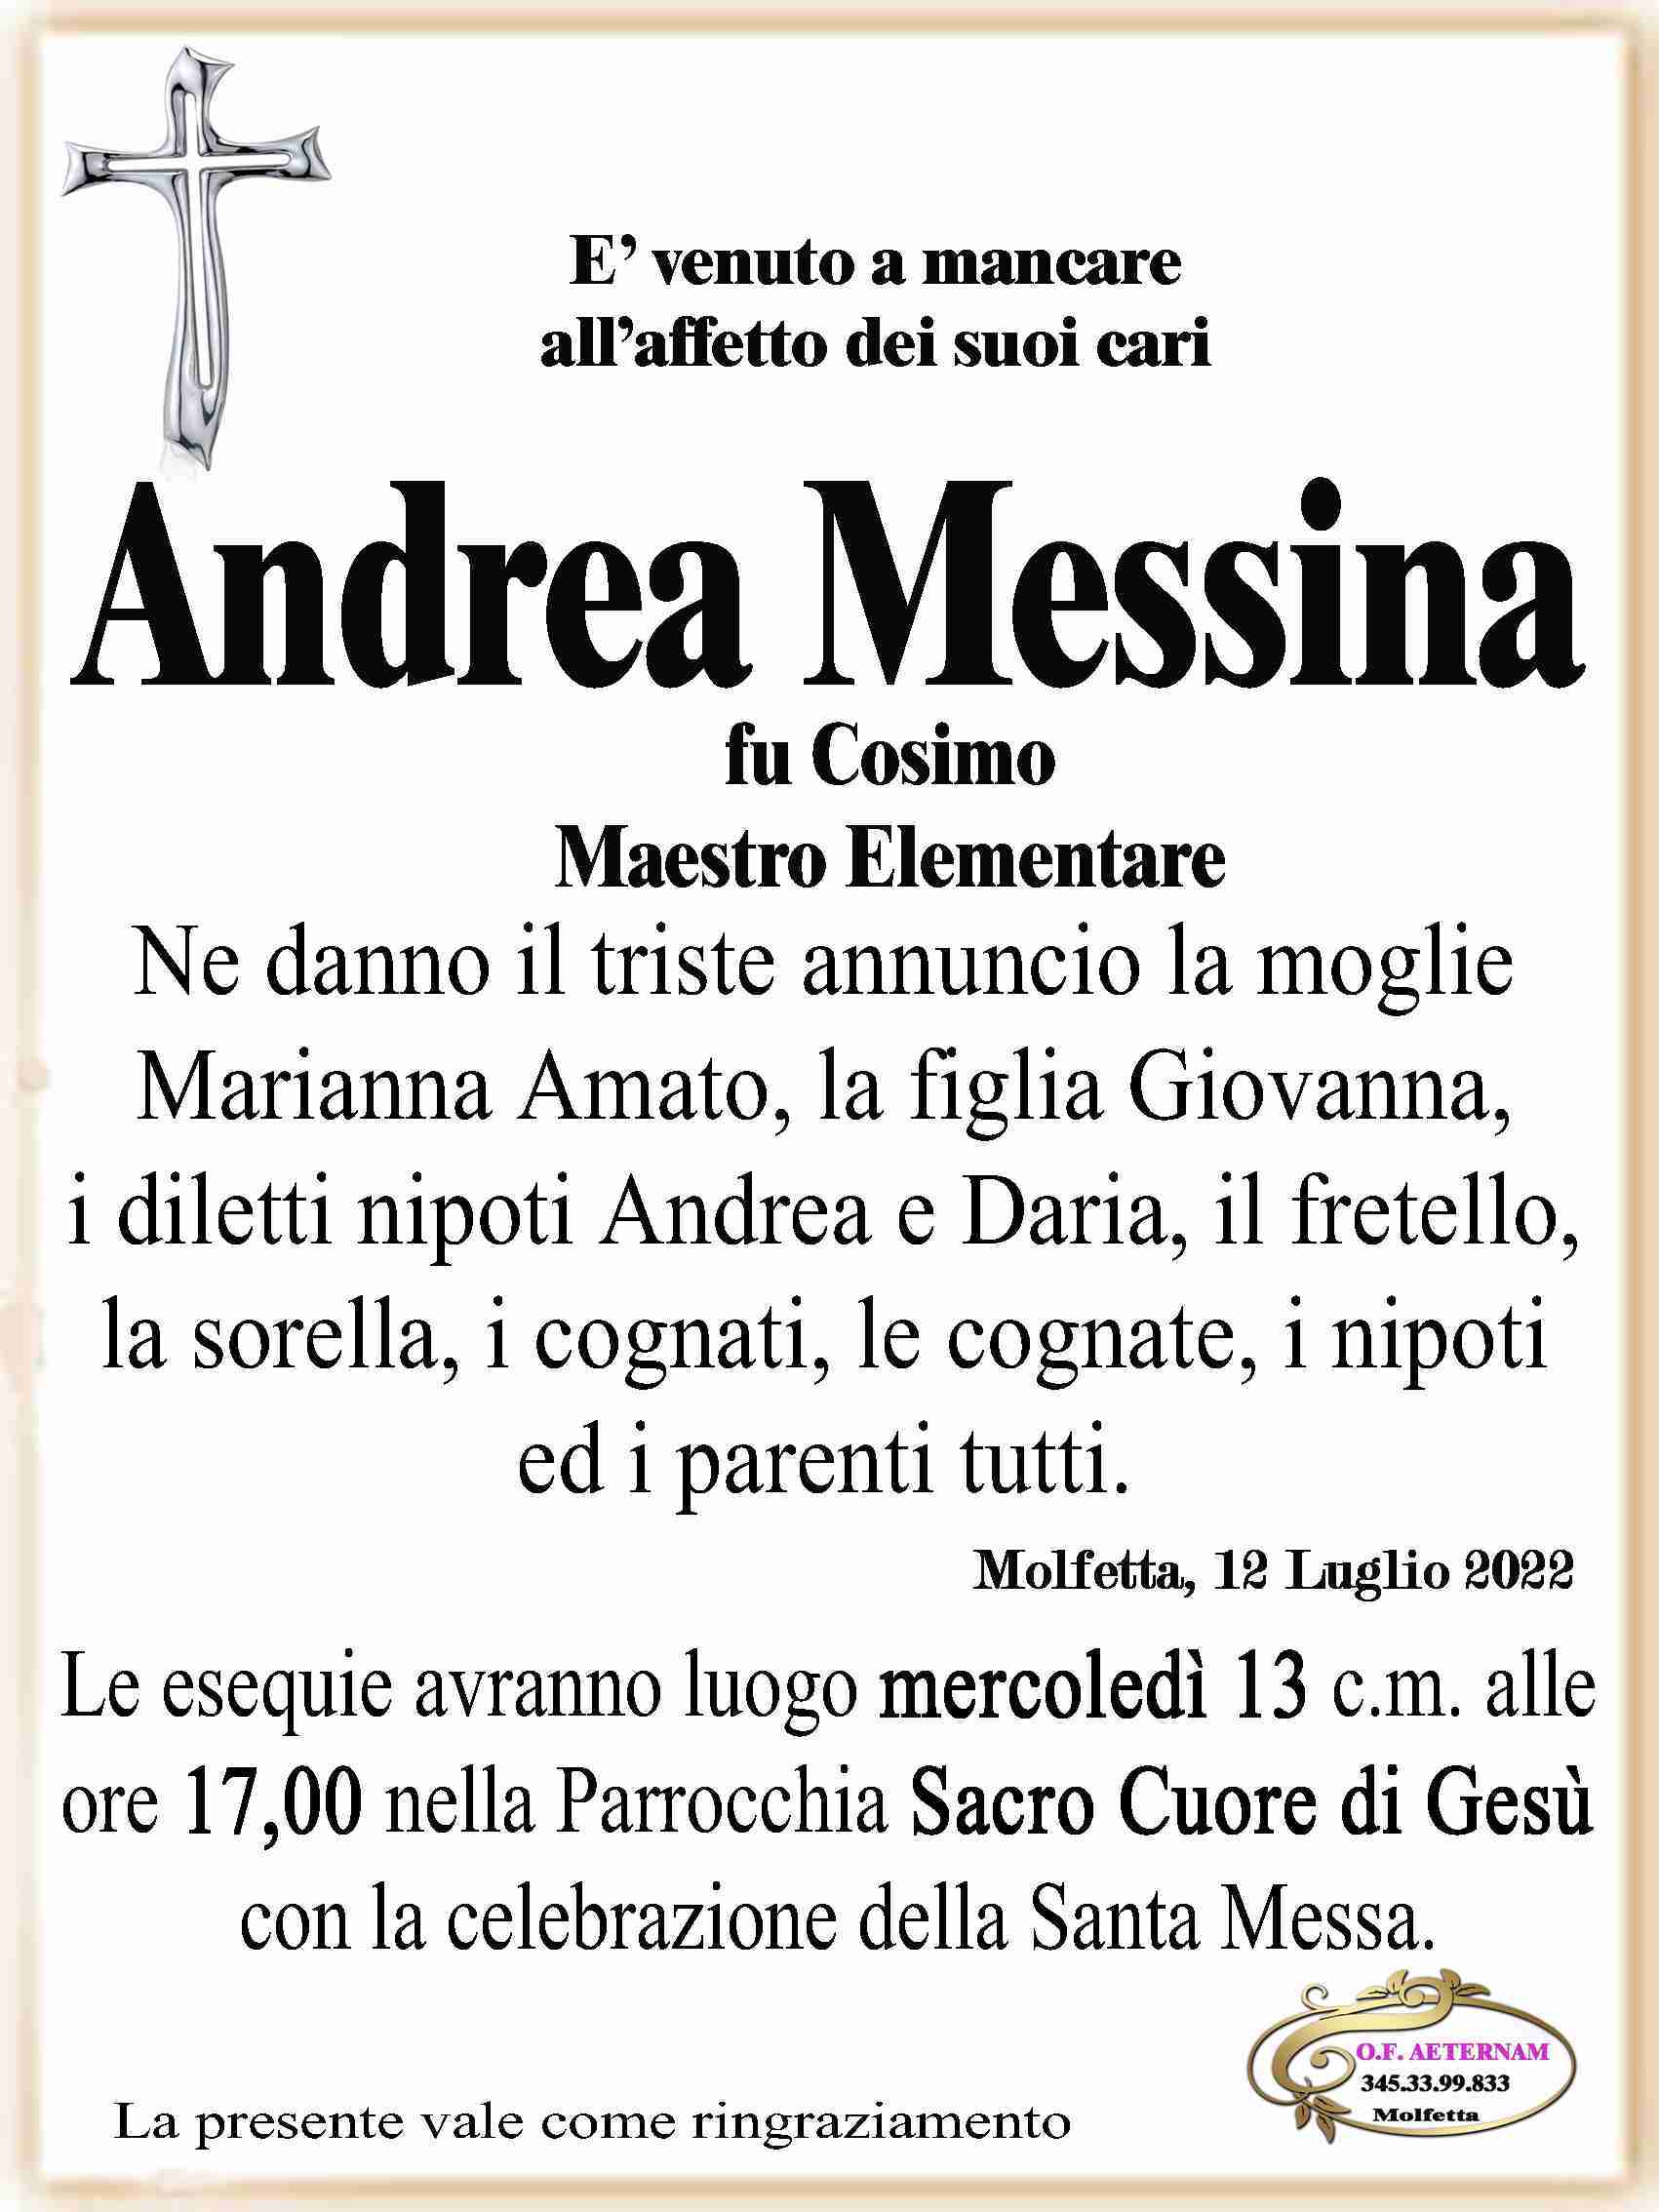 Andrea Messina